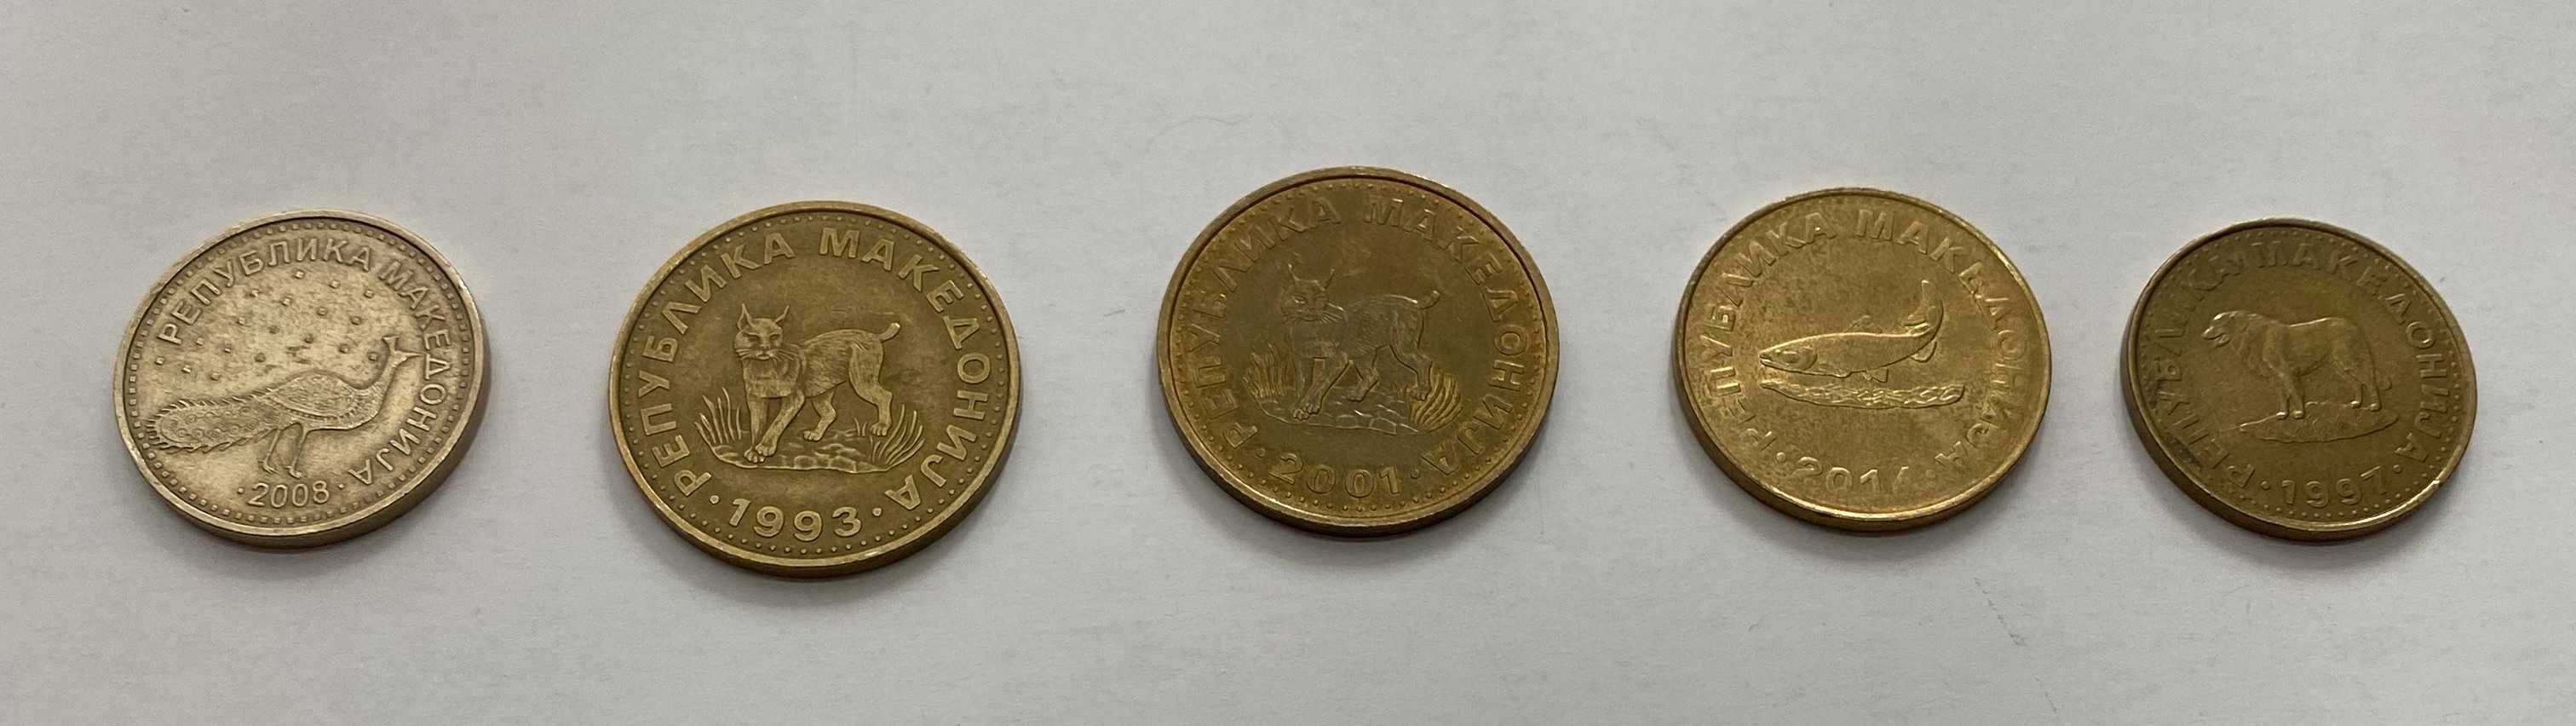 Монеты Мексики Чили Македонии Албании Доминиканской республики